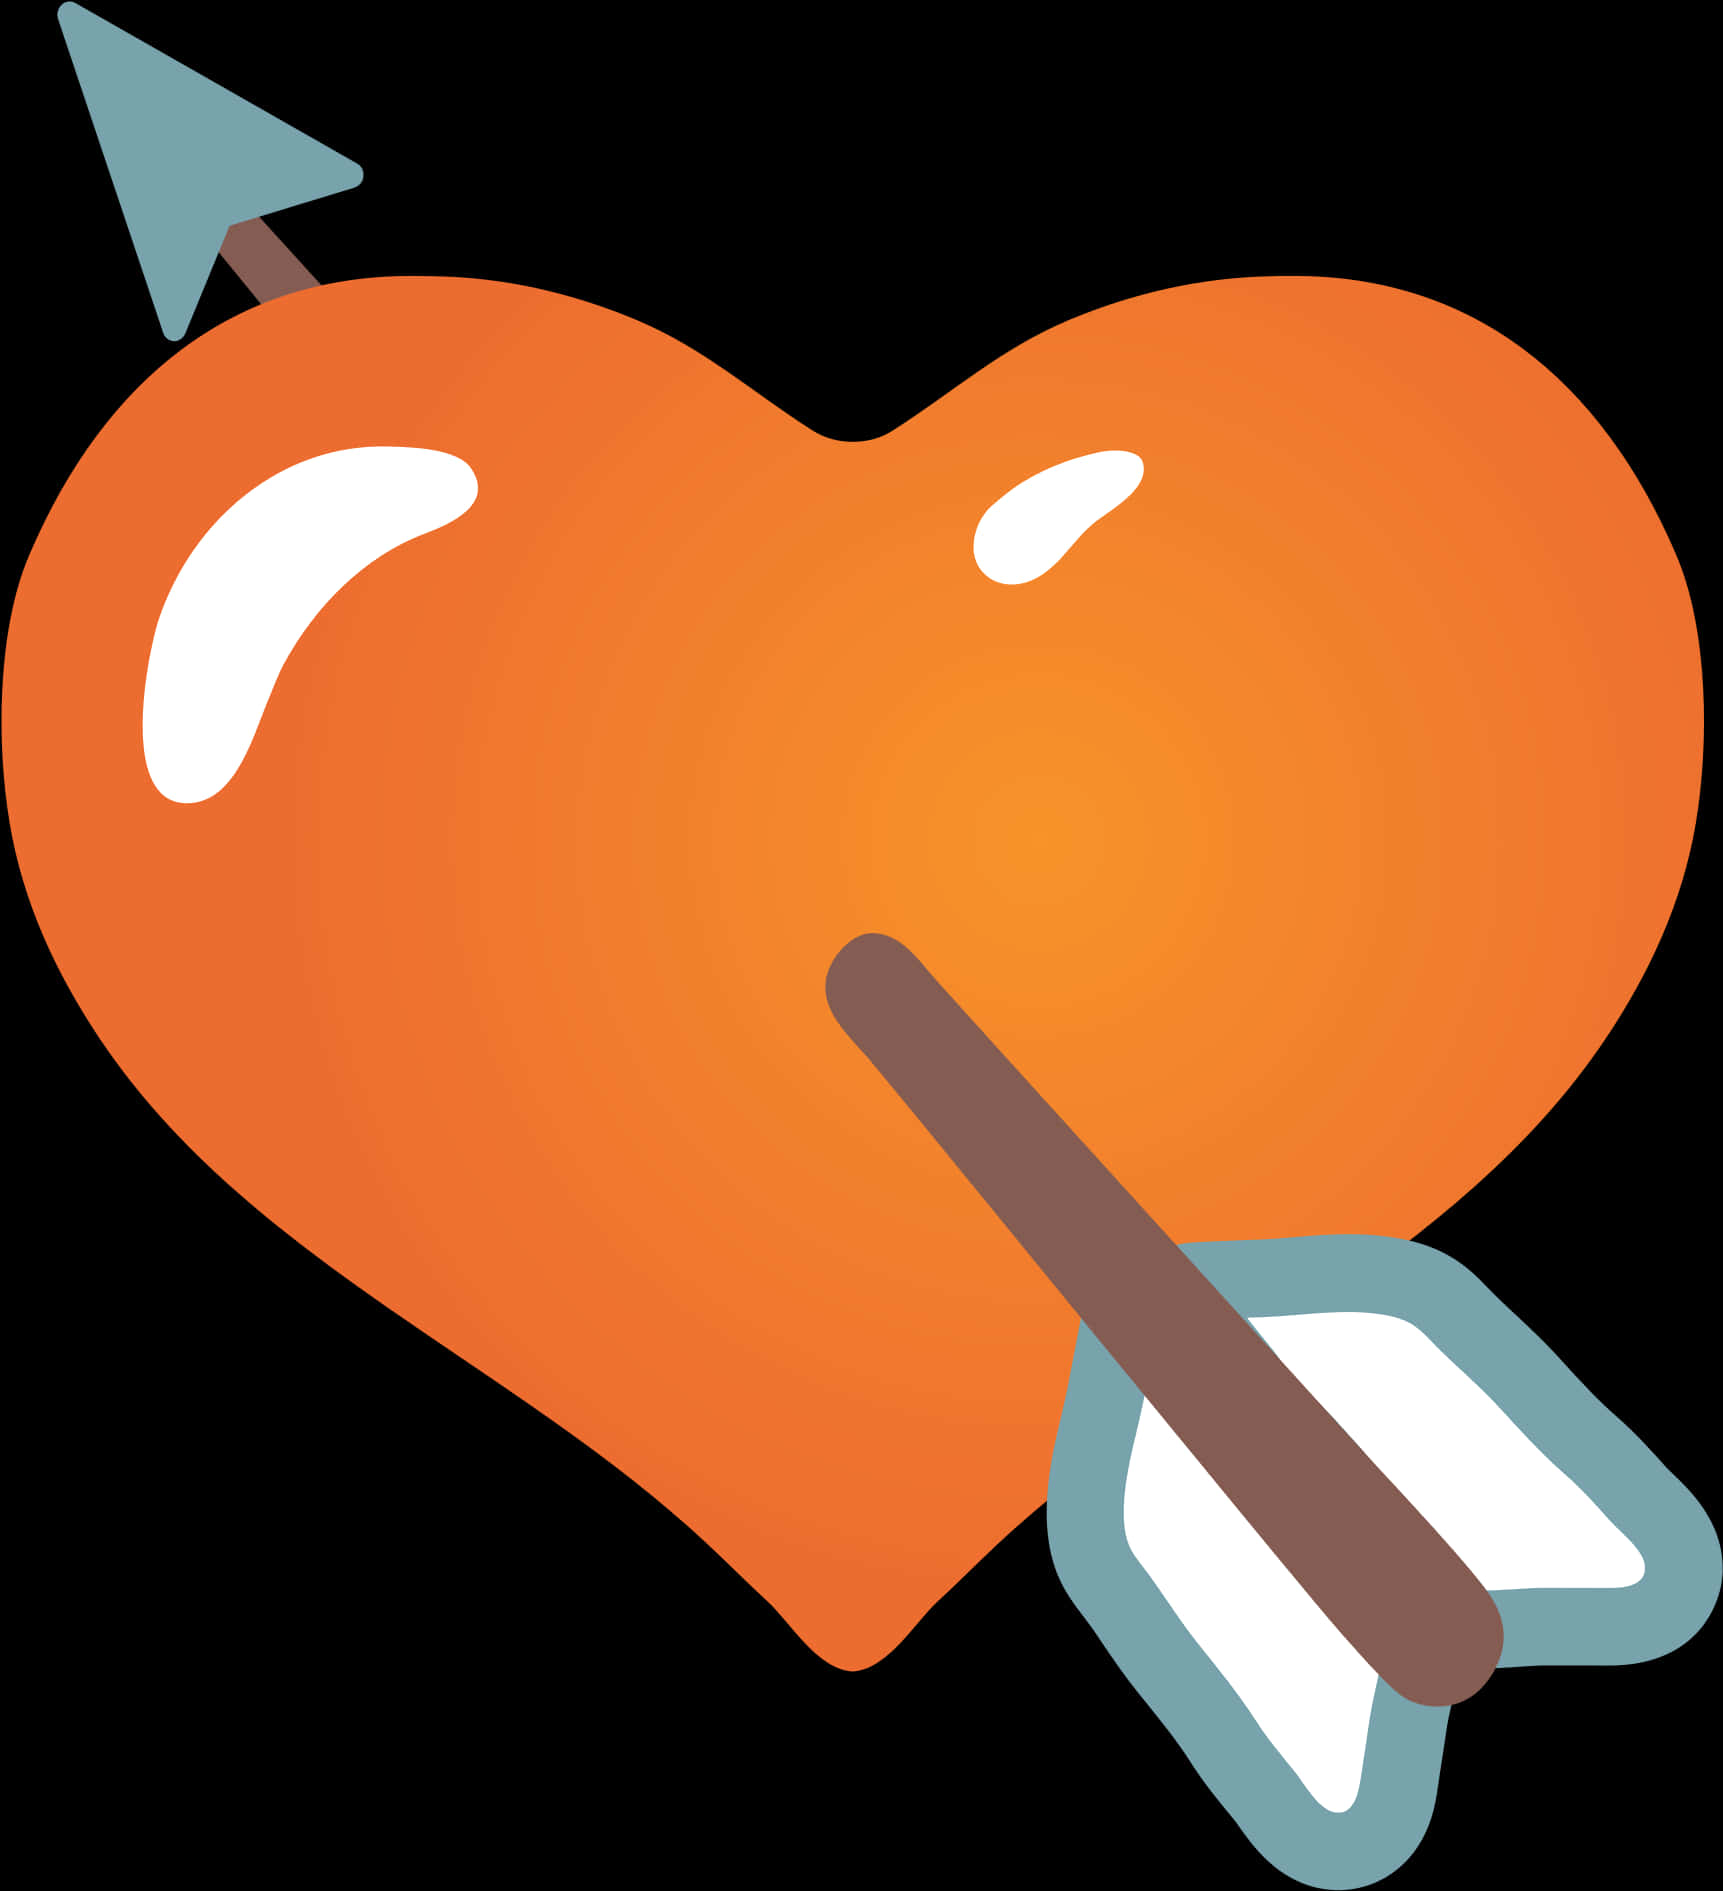 An Orange Heart With An Arrow